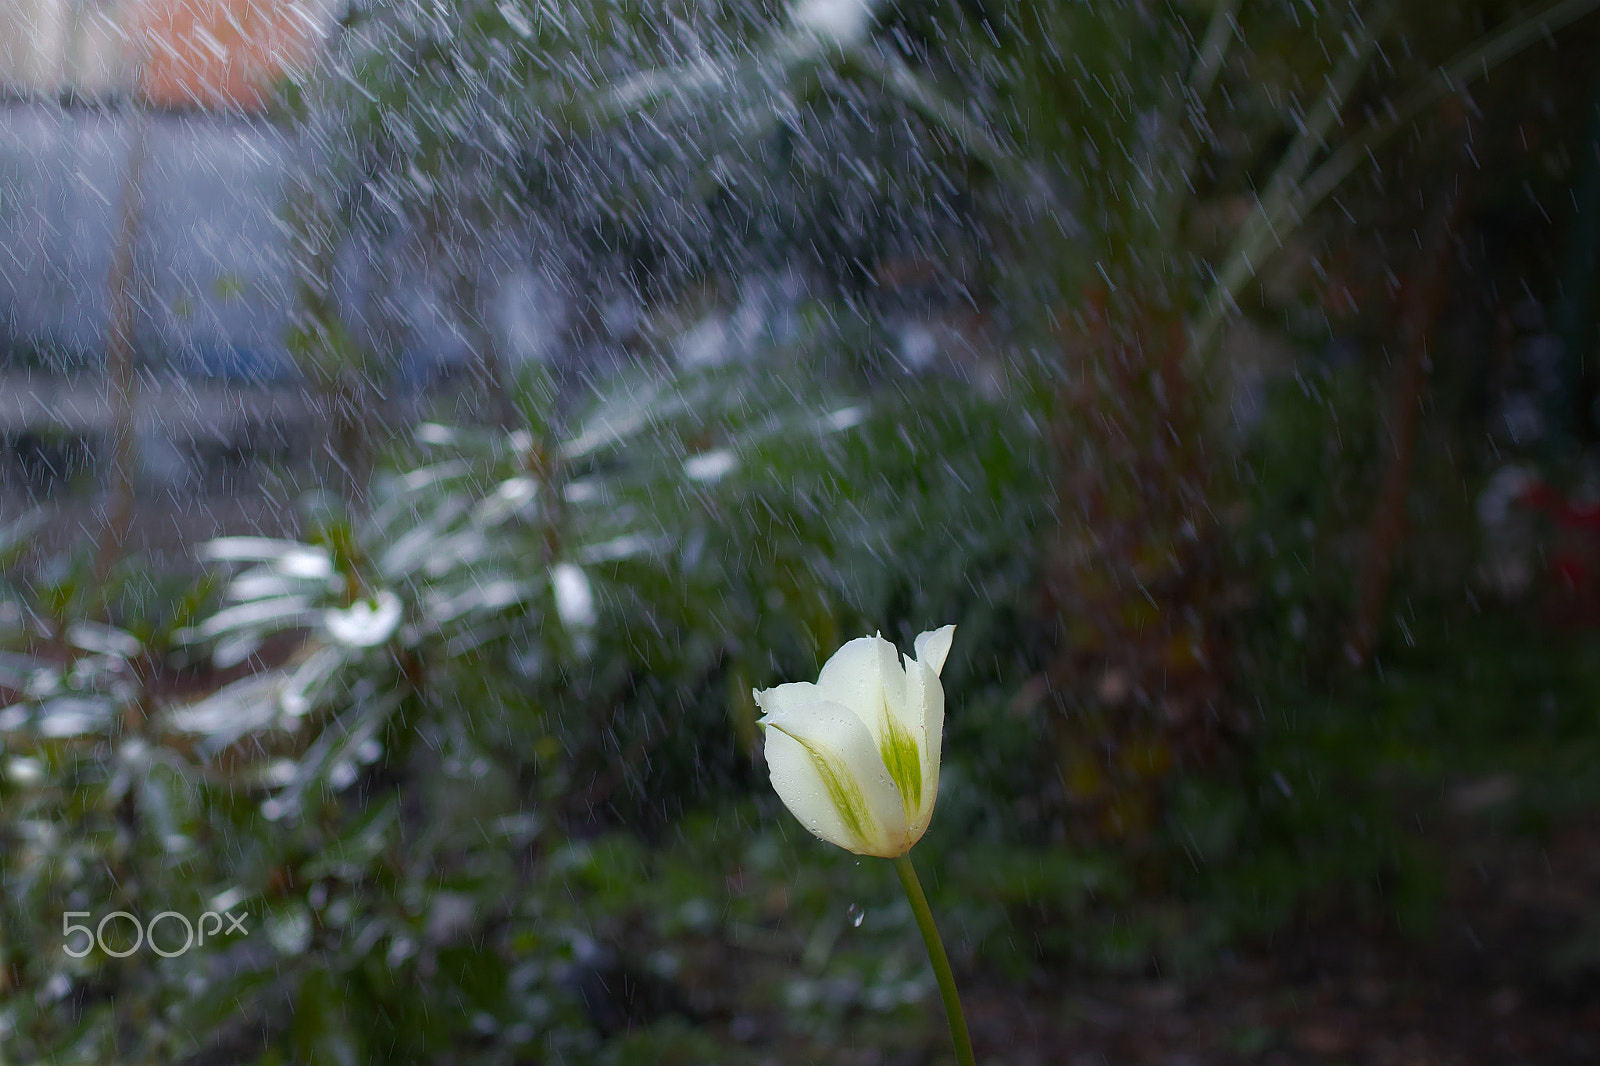 Sigma sd Quattro sample photo. Tulip in the rain photography